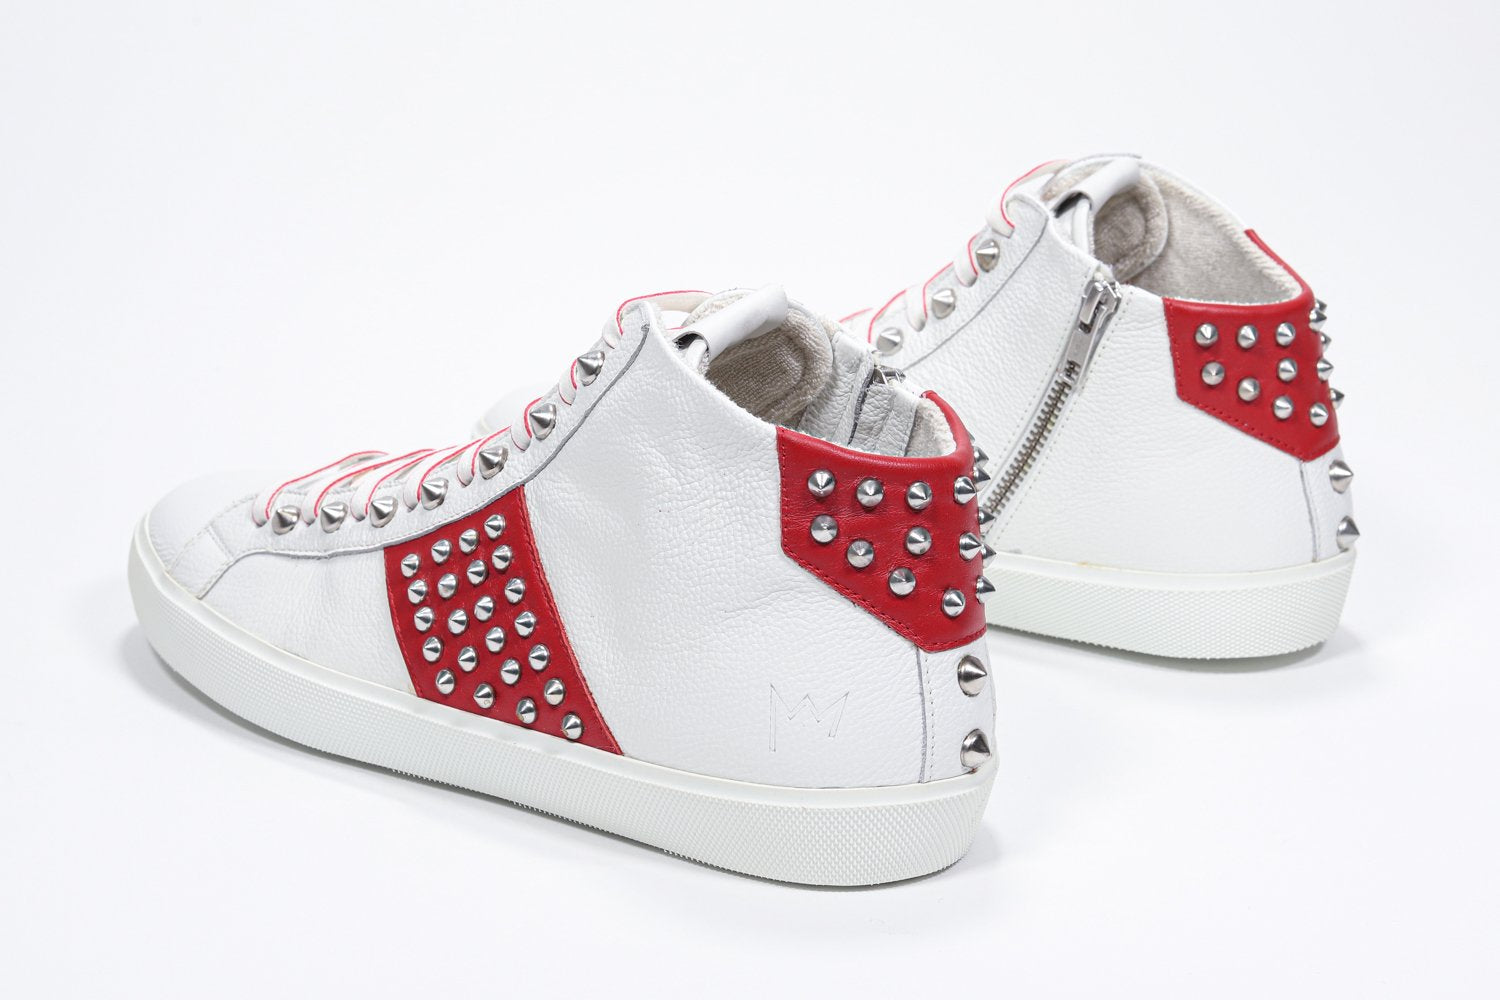 Vue de trois quarts arrière d'un modèle intermédiaire blanc et rouge sneaker. Tige en cuir avec clous, fermeture à glissière interne et semelle en caoutchouc blanc.